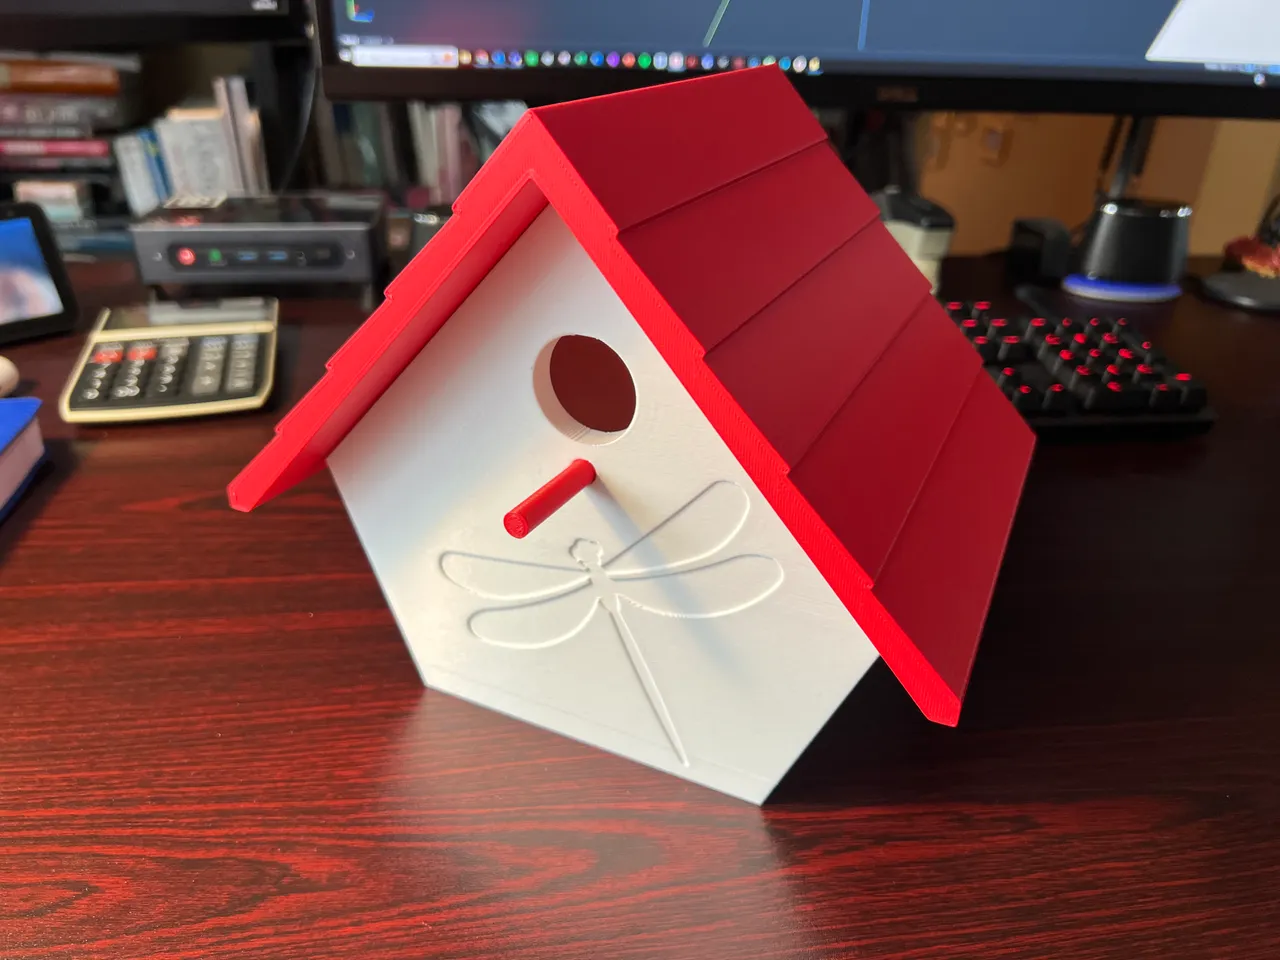 Bird House 3d model